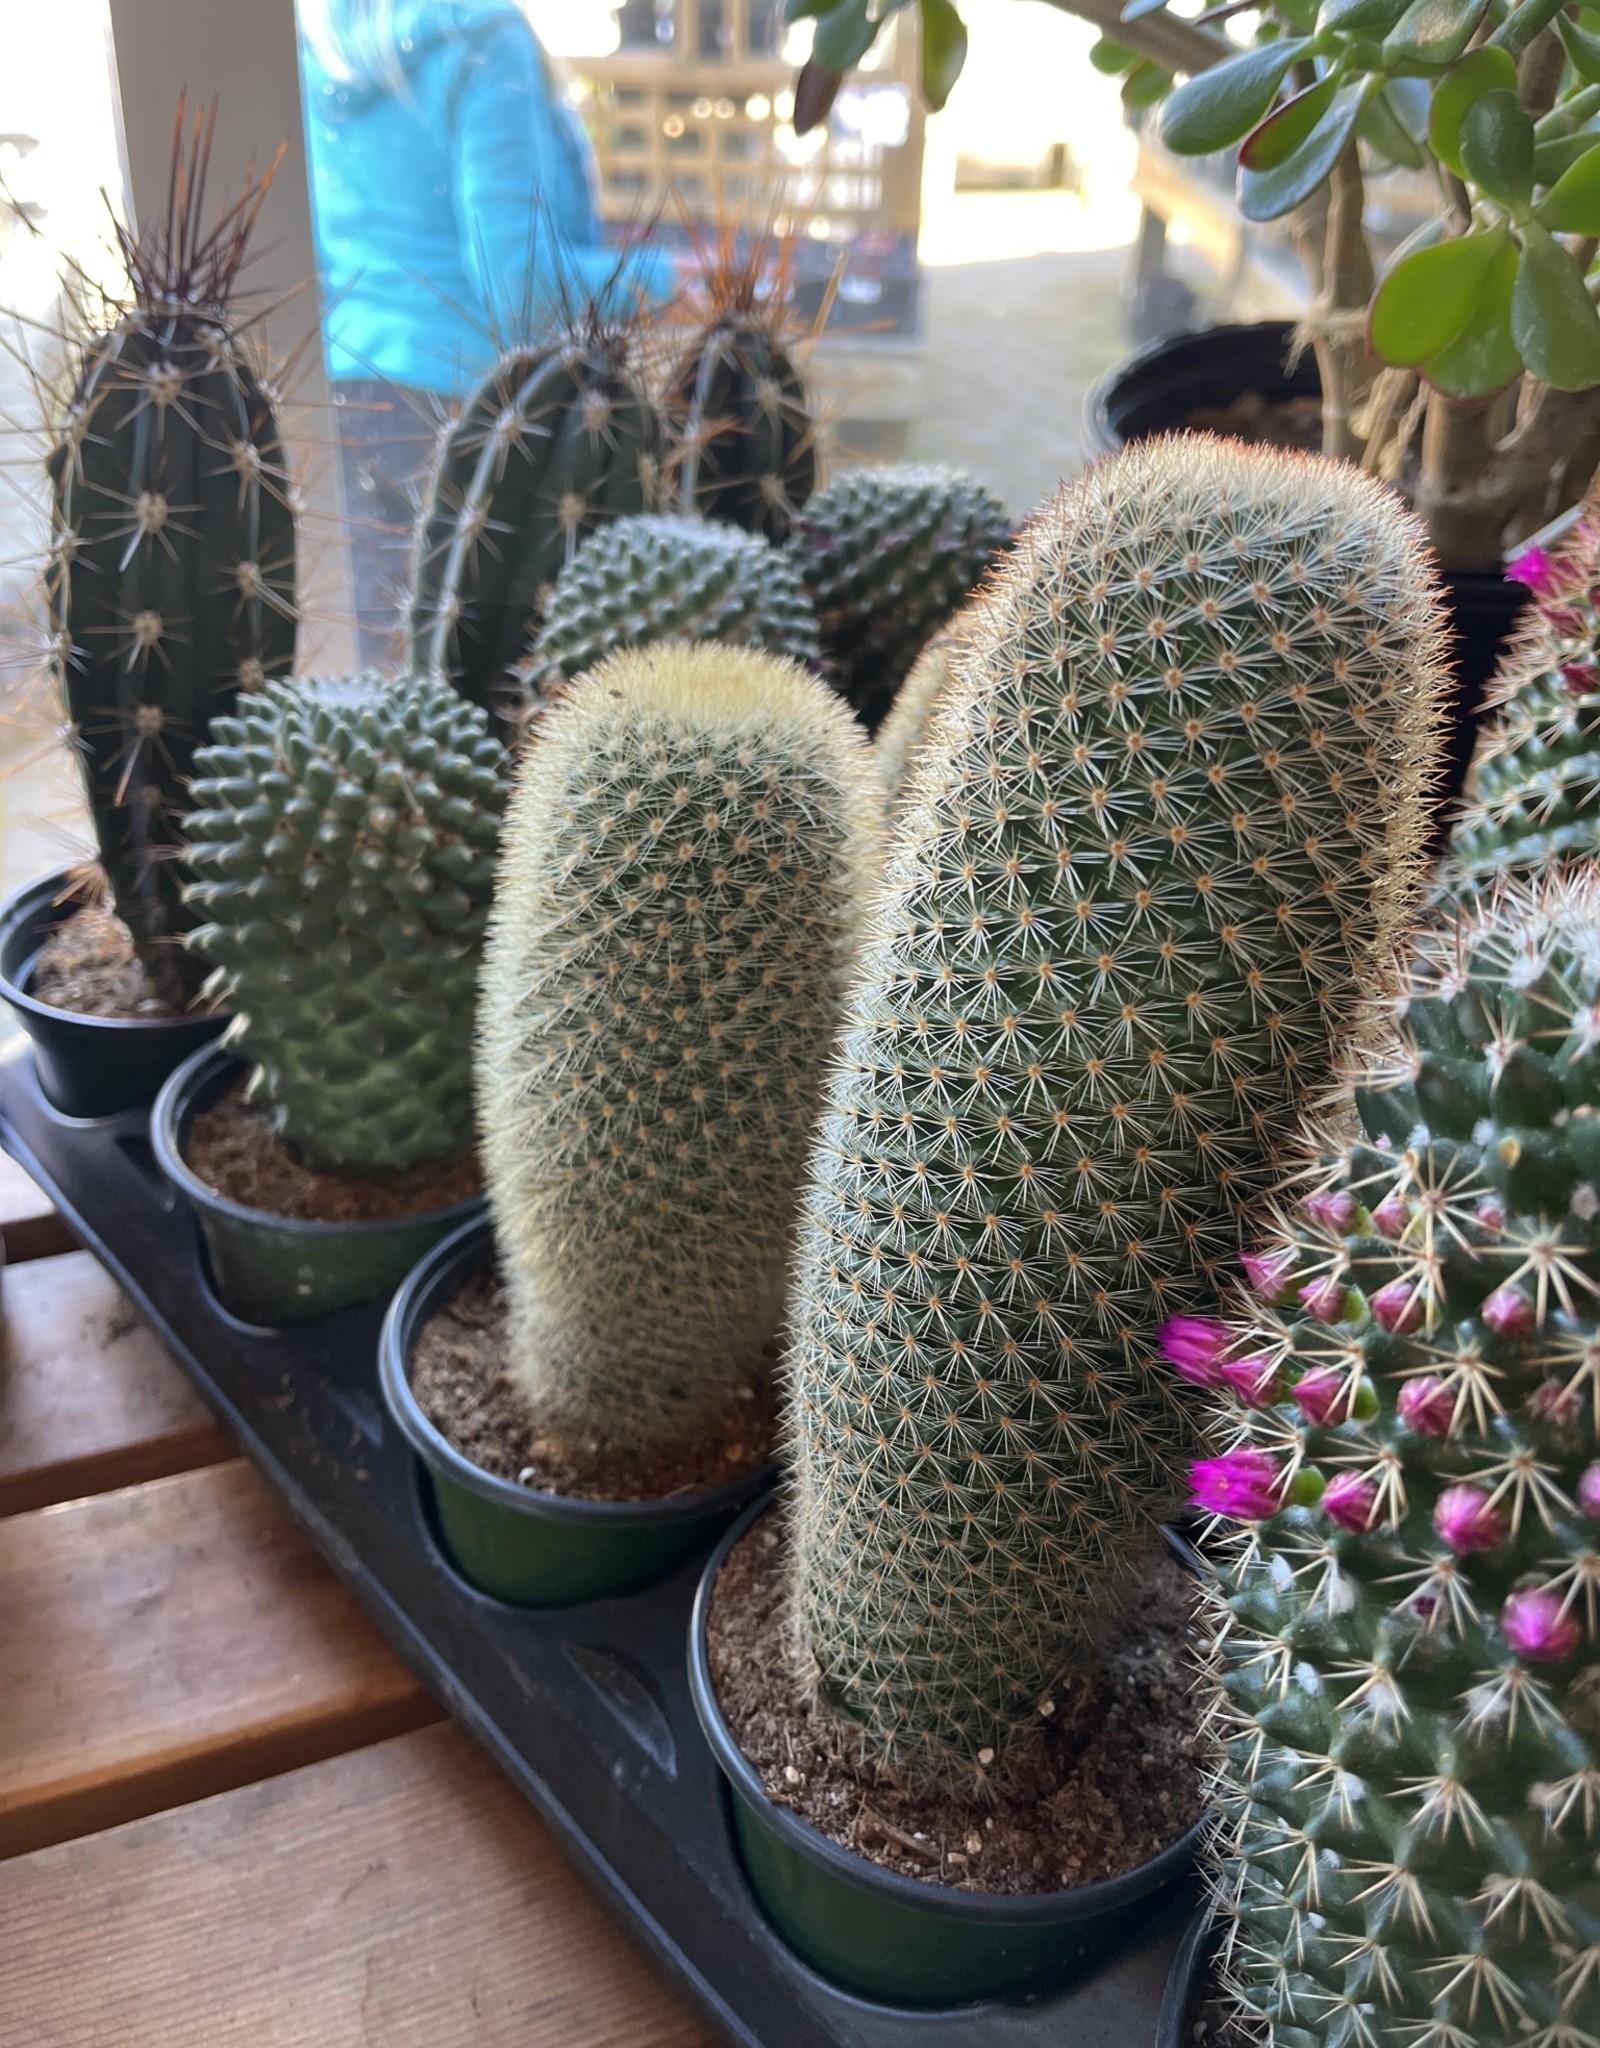 Cactus 4 inch